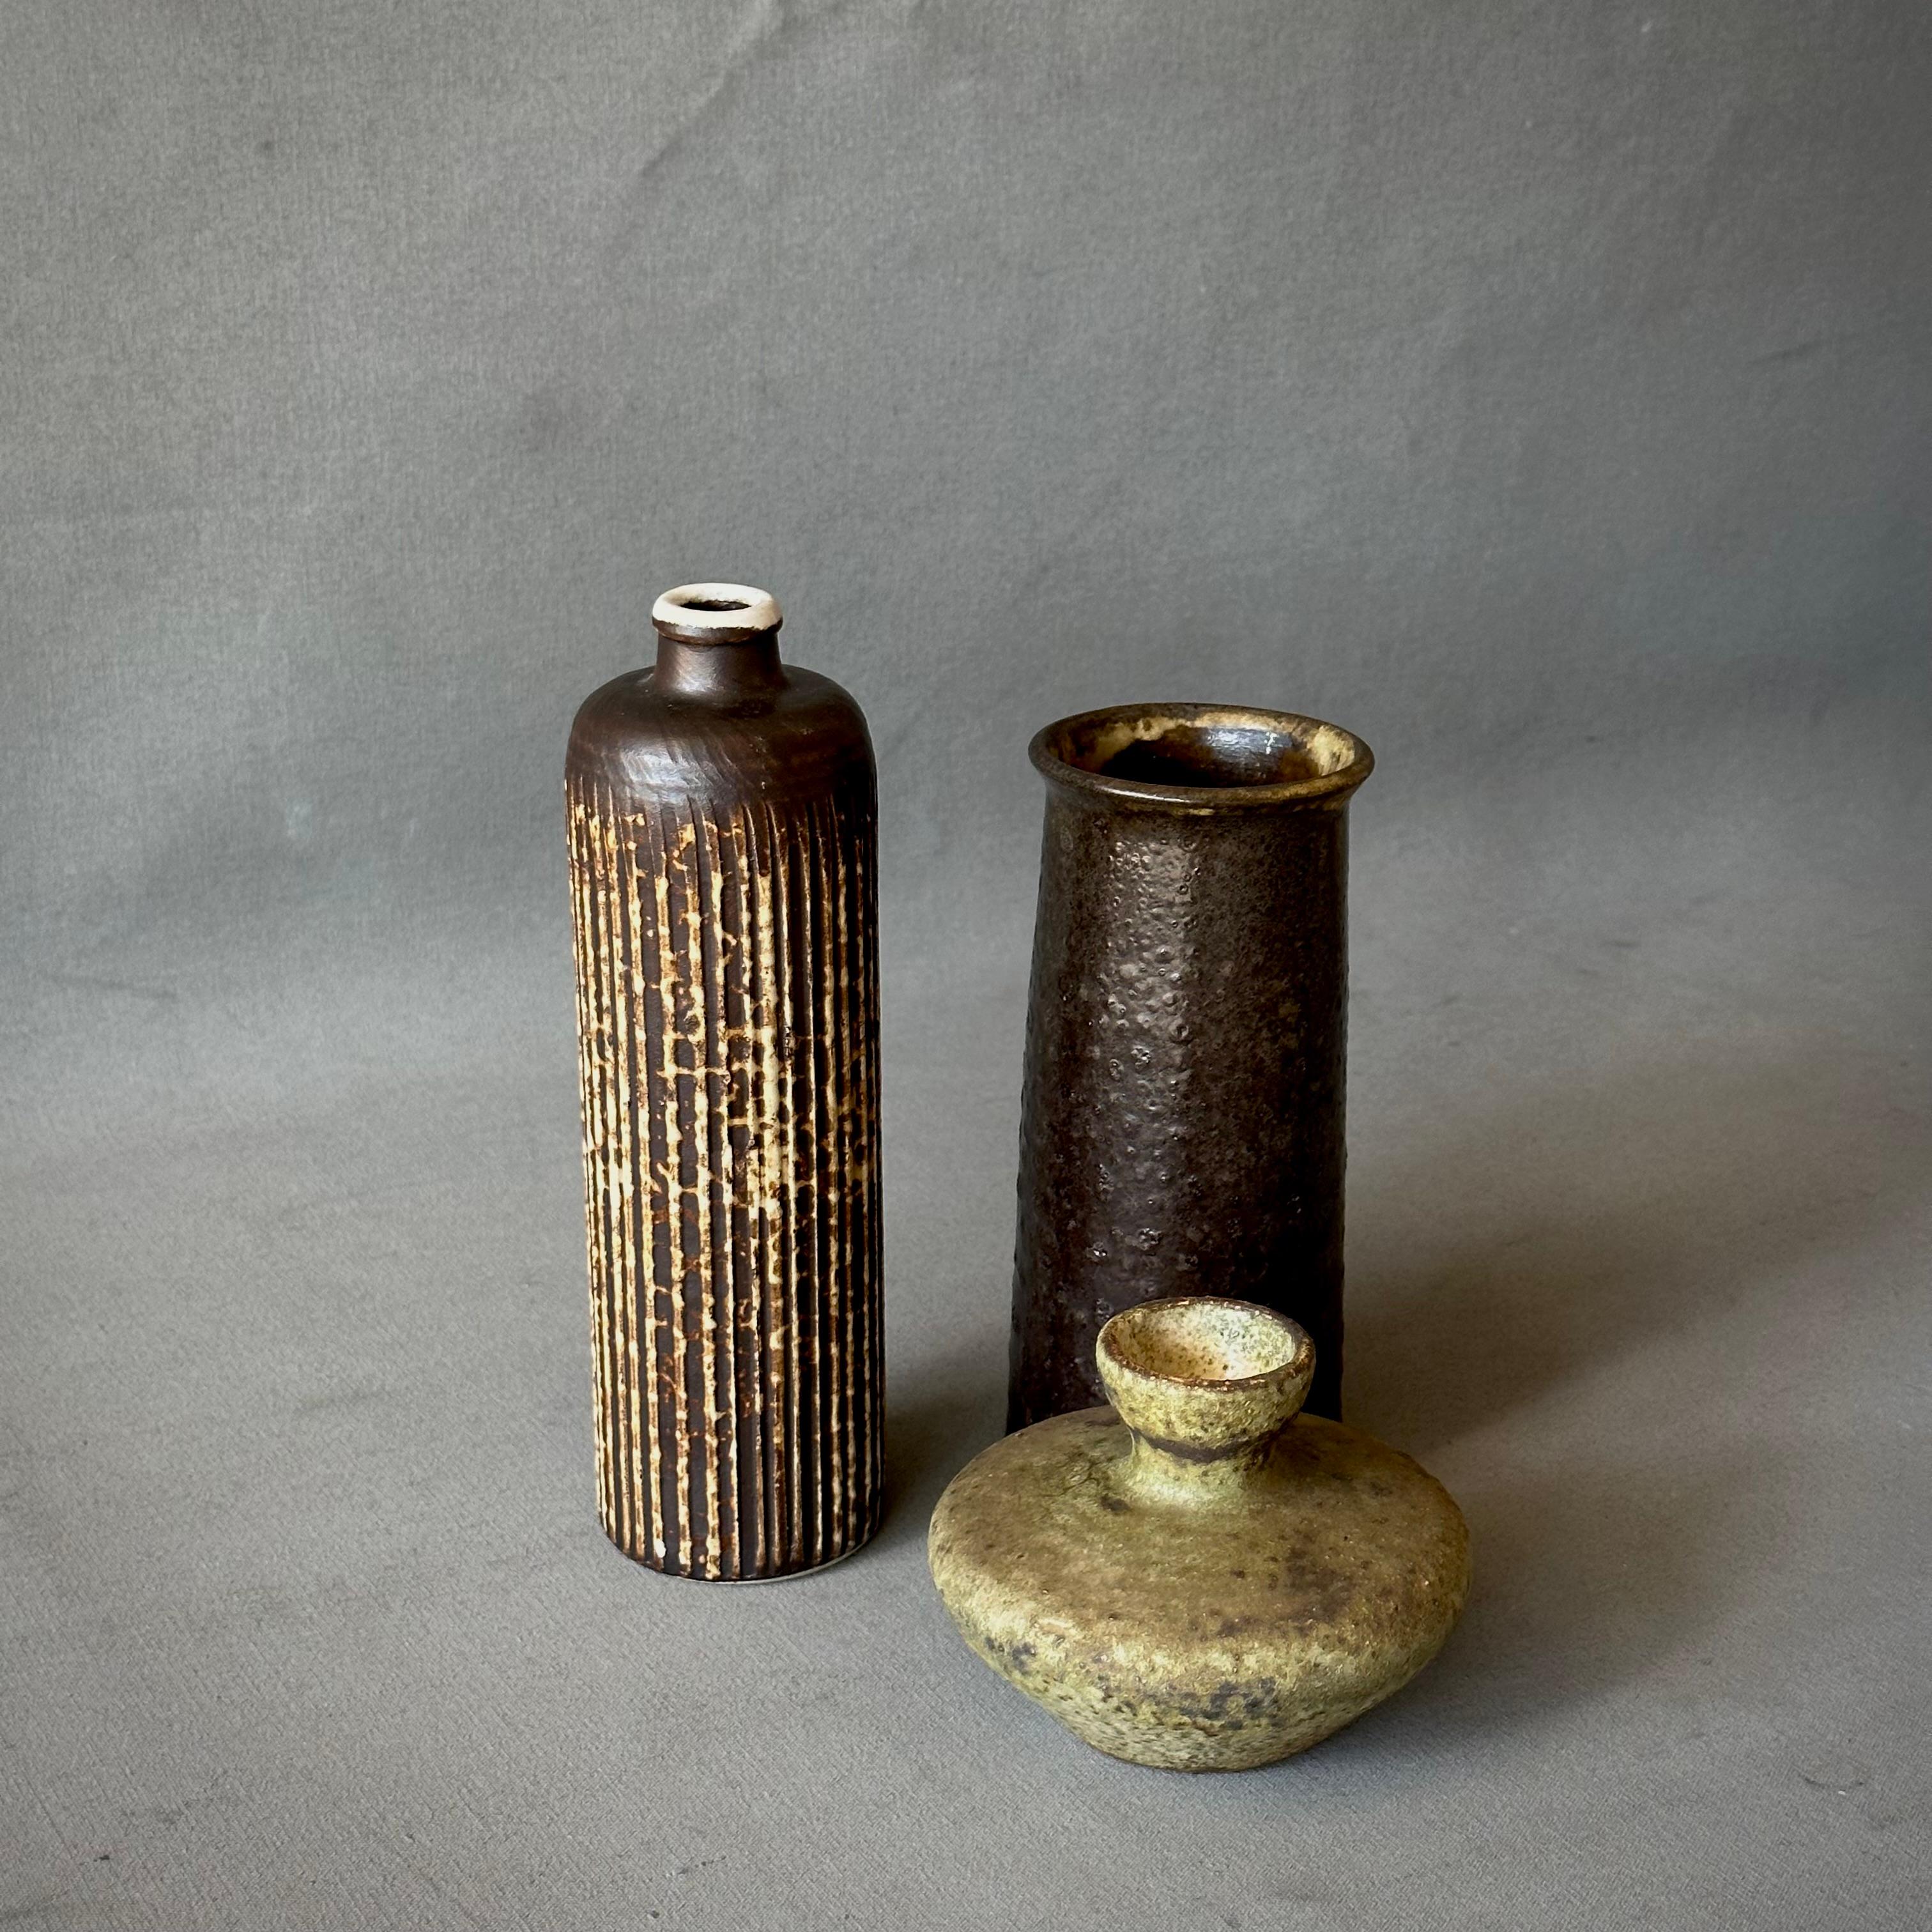 Eine Kollektion von drei Vasen aus Studio-Keramik in erdigen Brauntönen.

Belgien, um 1970

Größte Abmessungen: 4B x 4T x 8H